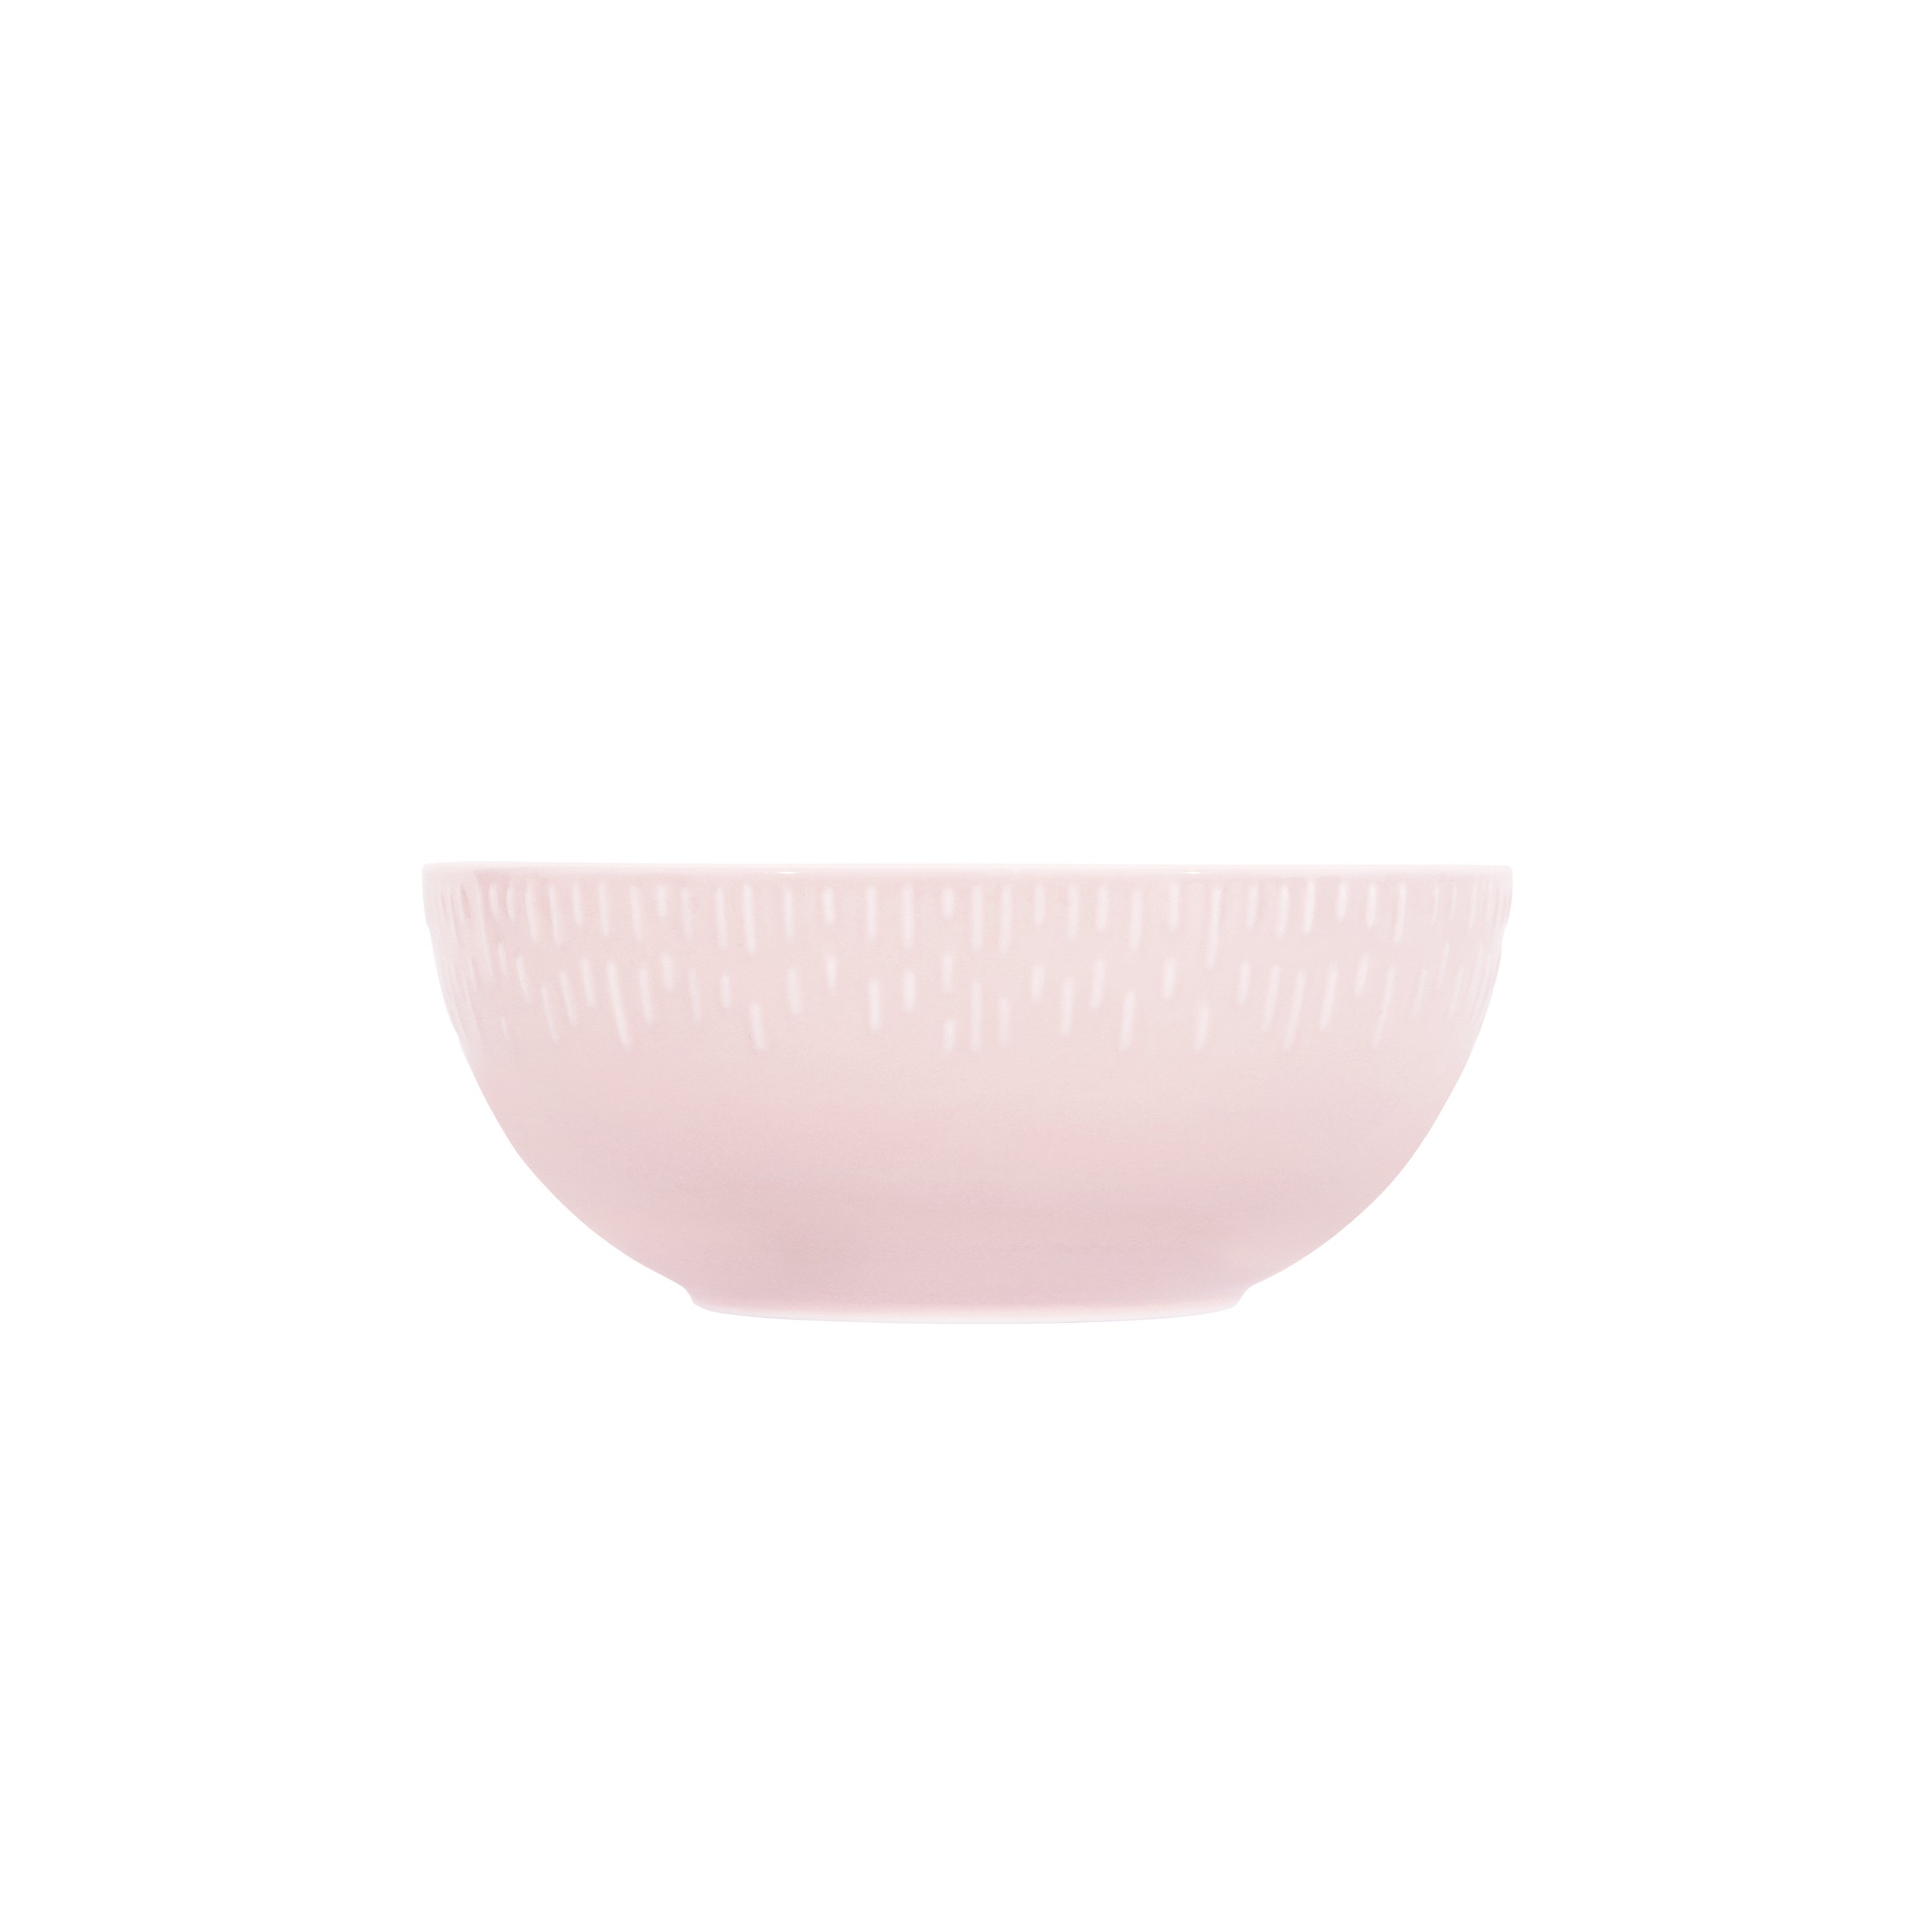 Aida - Life in Colour - Confetti - Candy floss saladbowl w/relief porcelain (13350) - Hjemme og kjøkken